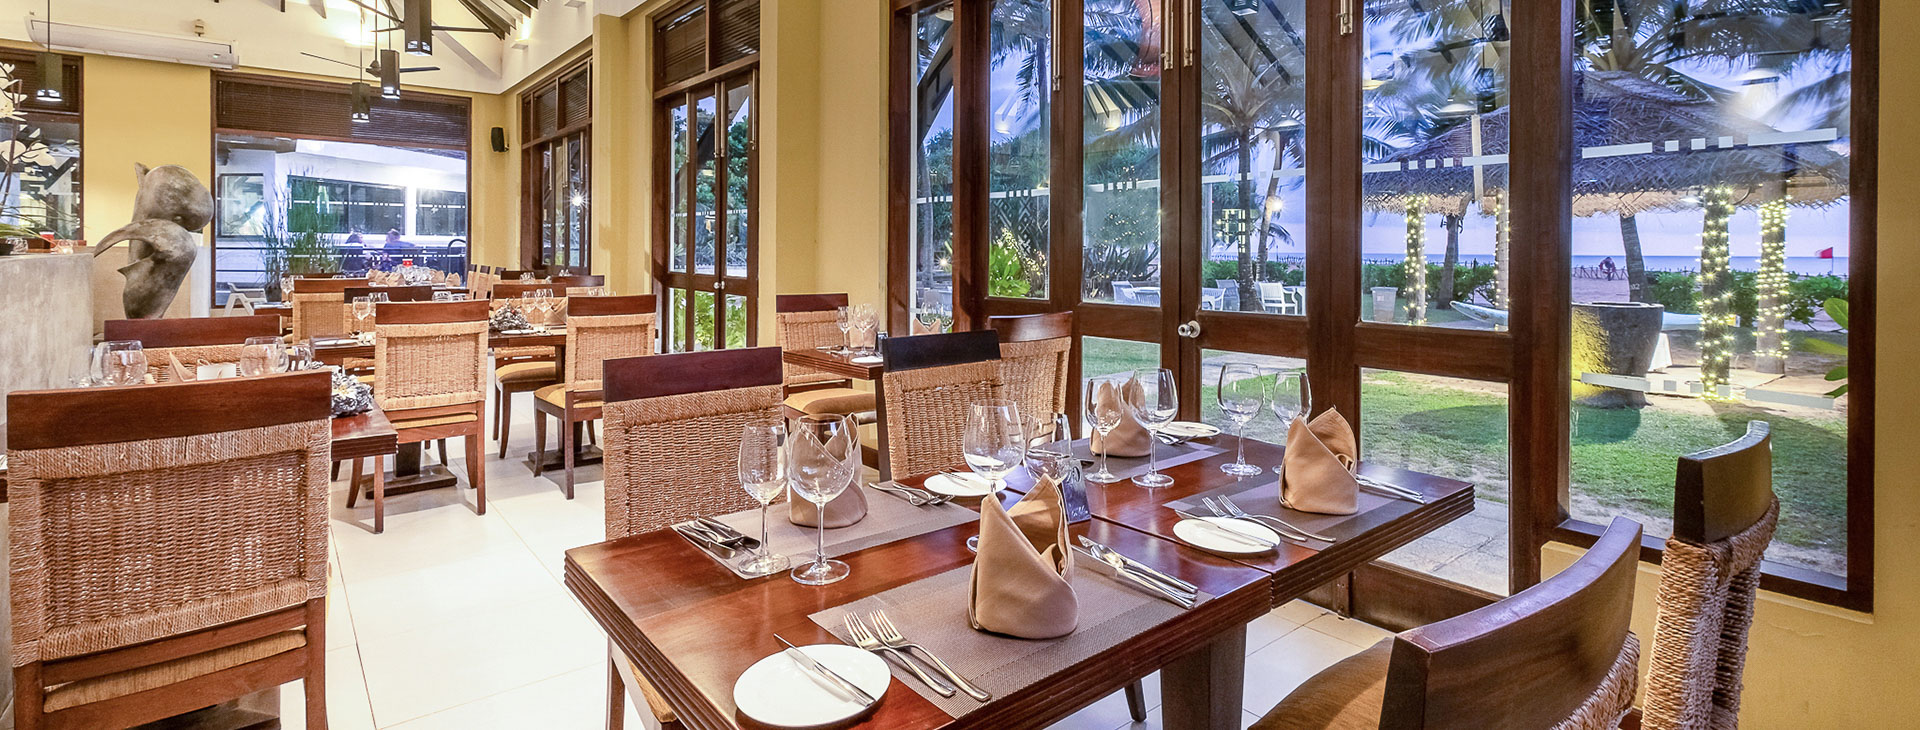 Club Hotel Dolphin - dovolená na Srí Lance Obrázek21